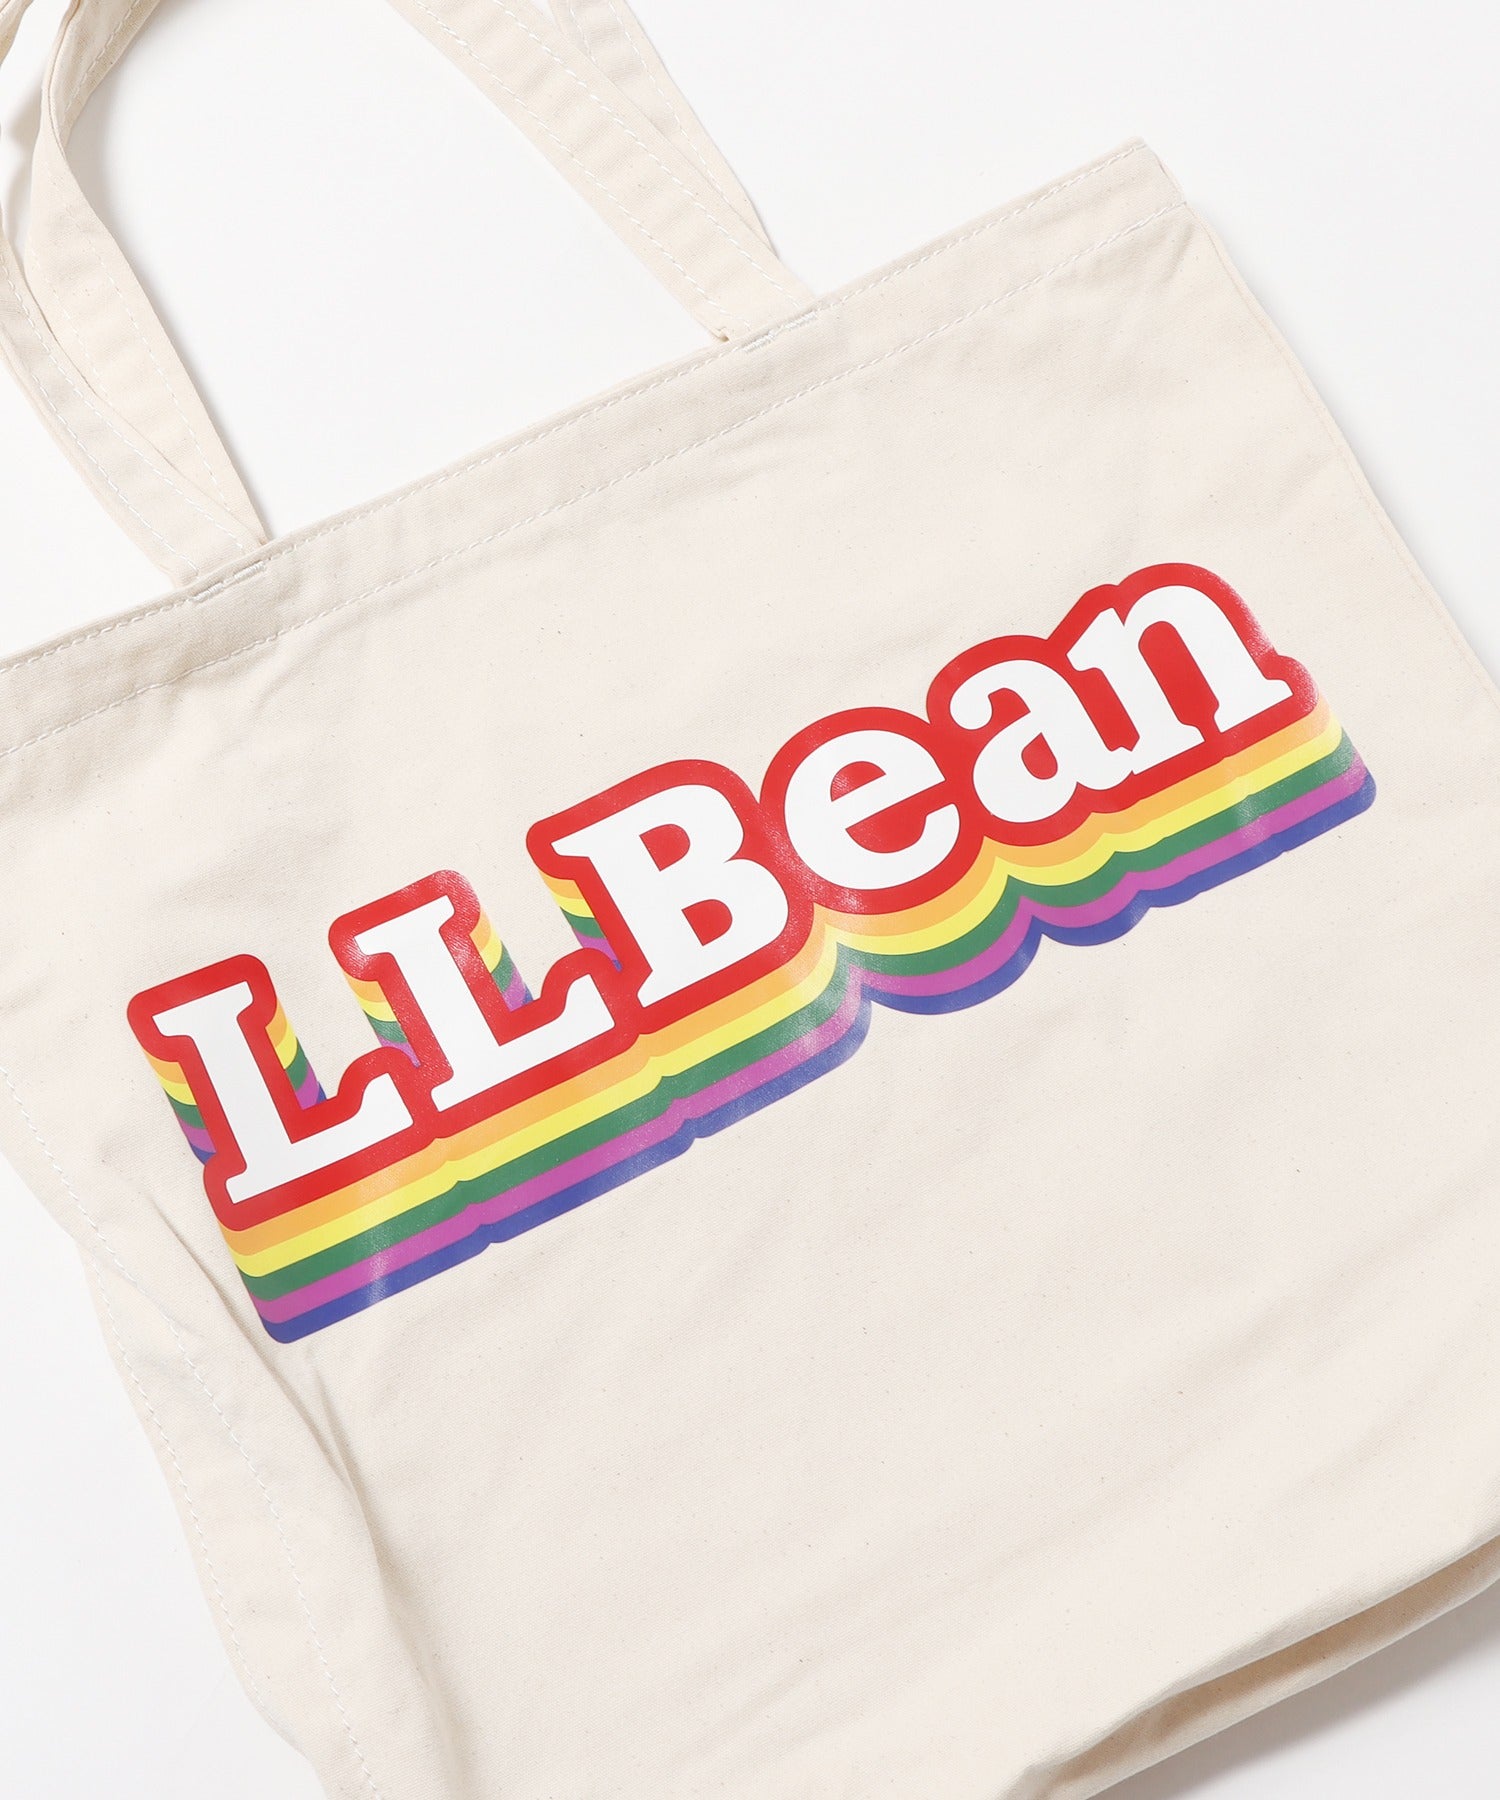 L.L.Bean/エル・エル・ビーン ウィケッド ショッパー トートバッグ